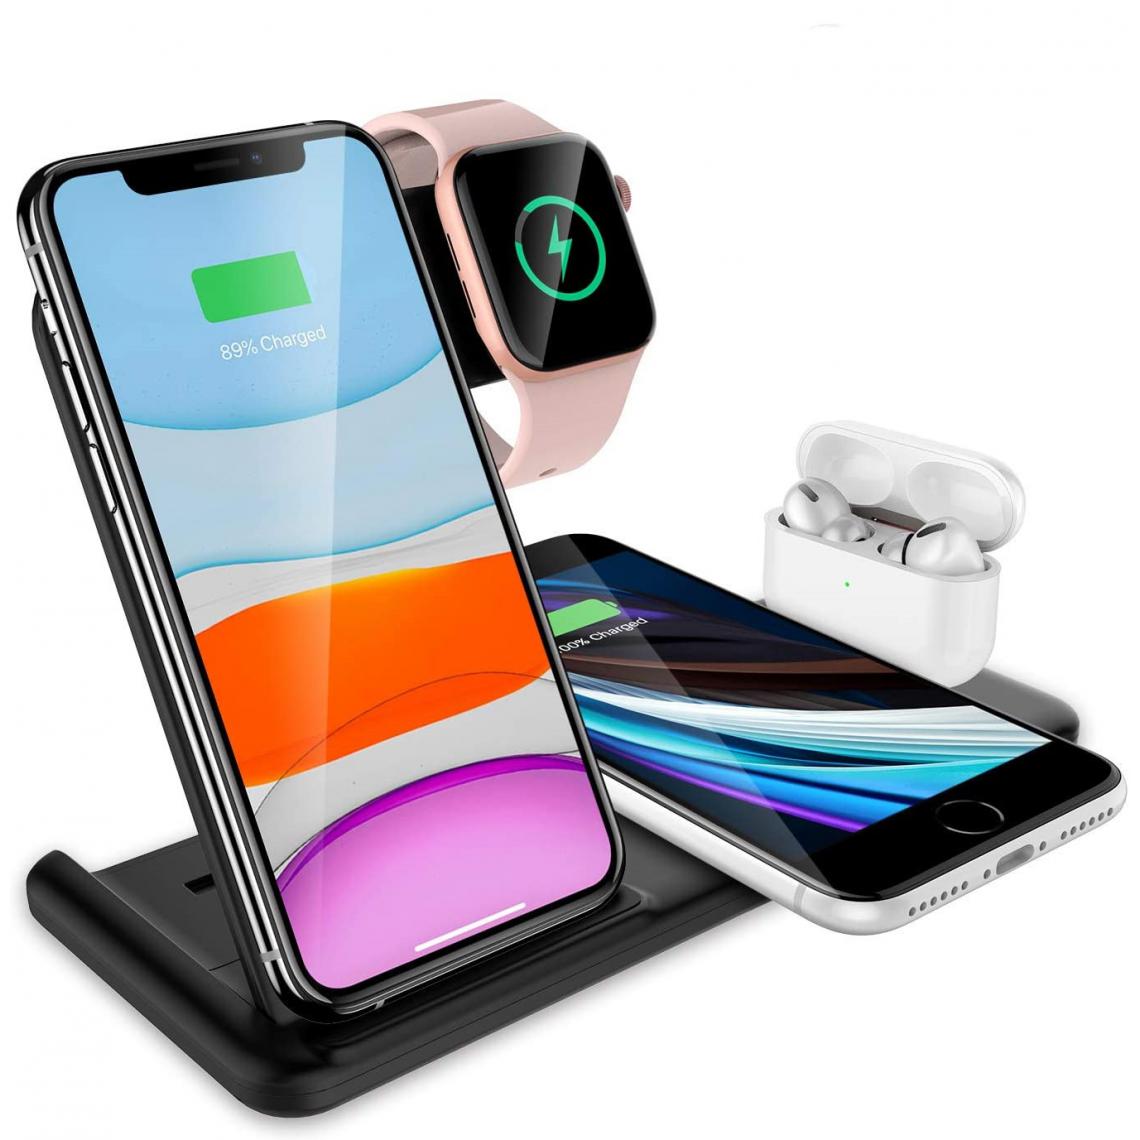 Chrono - Station de charge sans fil 4 en 1, support de charge rapide certifié Qi 15W compatible avec iPhone 12/12 Pro/12 Pro Max/11/11 Pro Max, Apple Watch, AirPods Pro,(noir) - Chargeur secteur téléphone